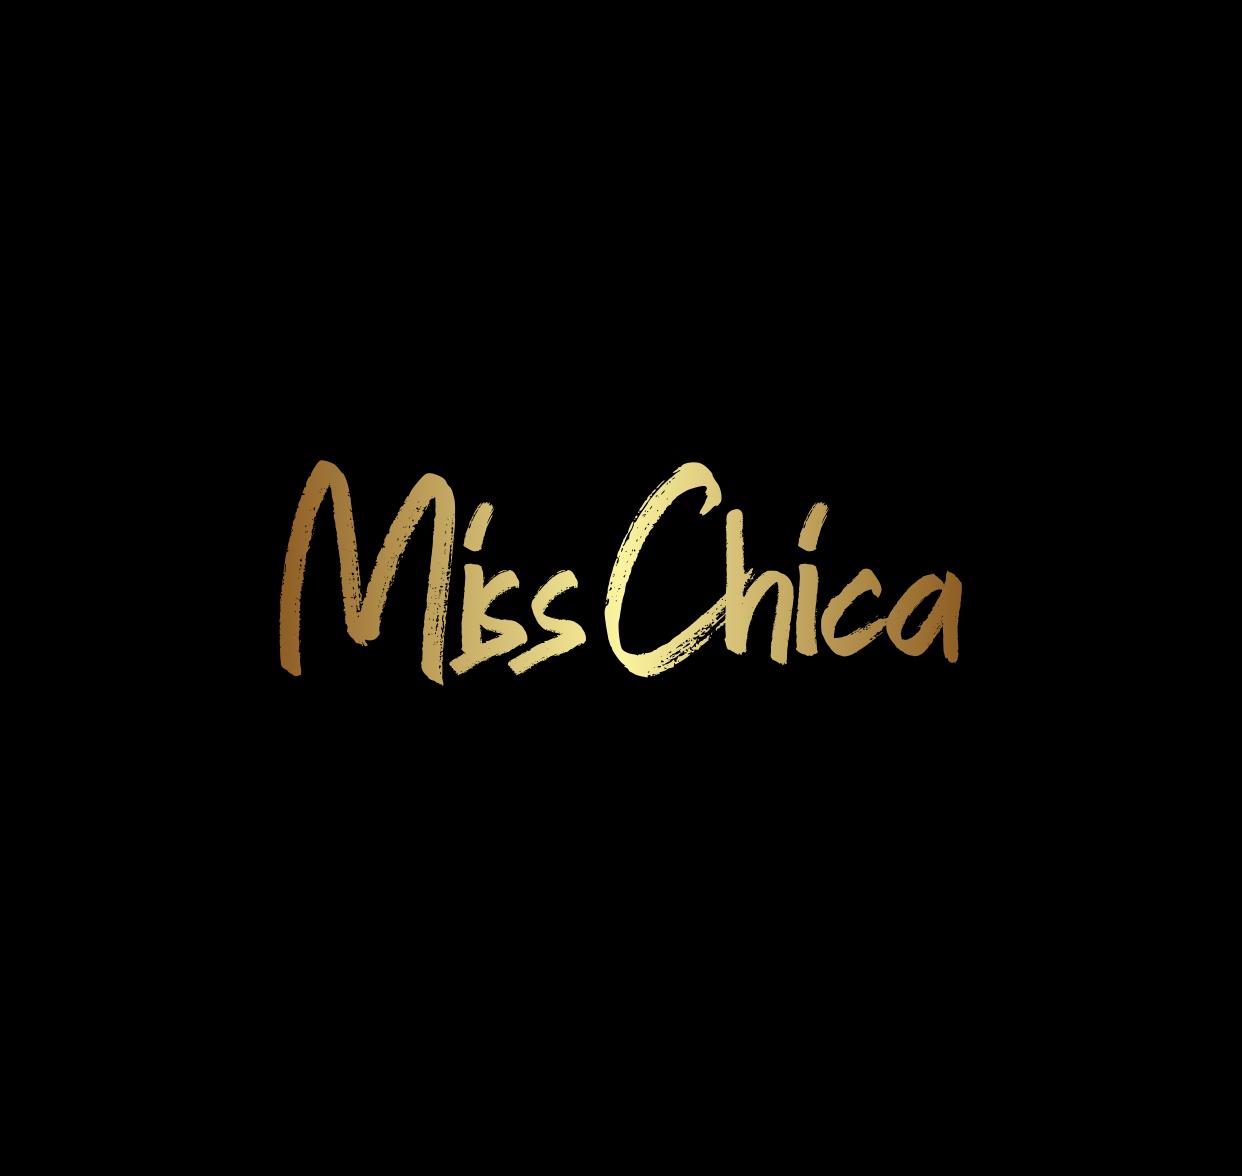 MissChica